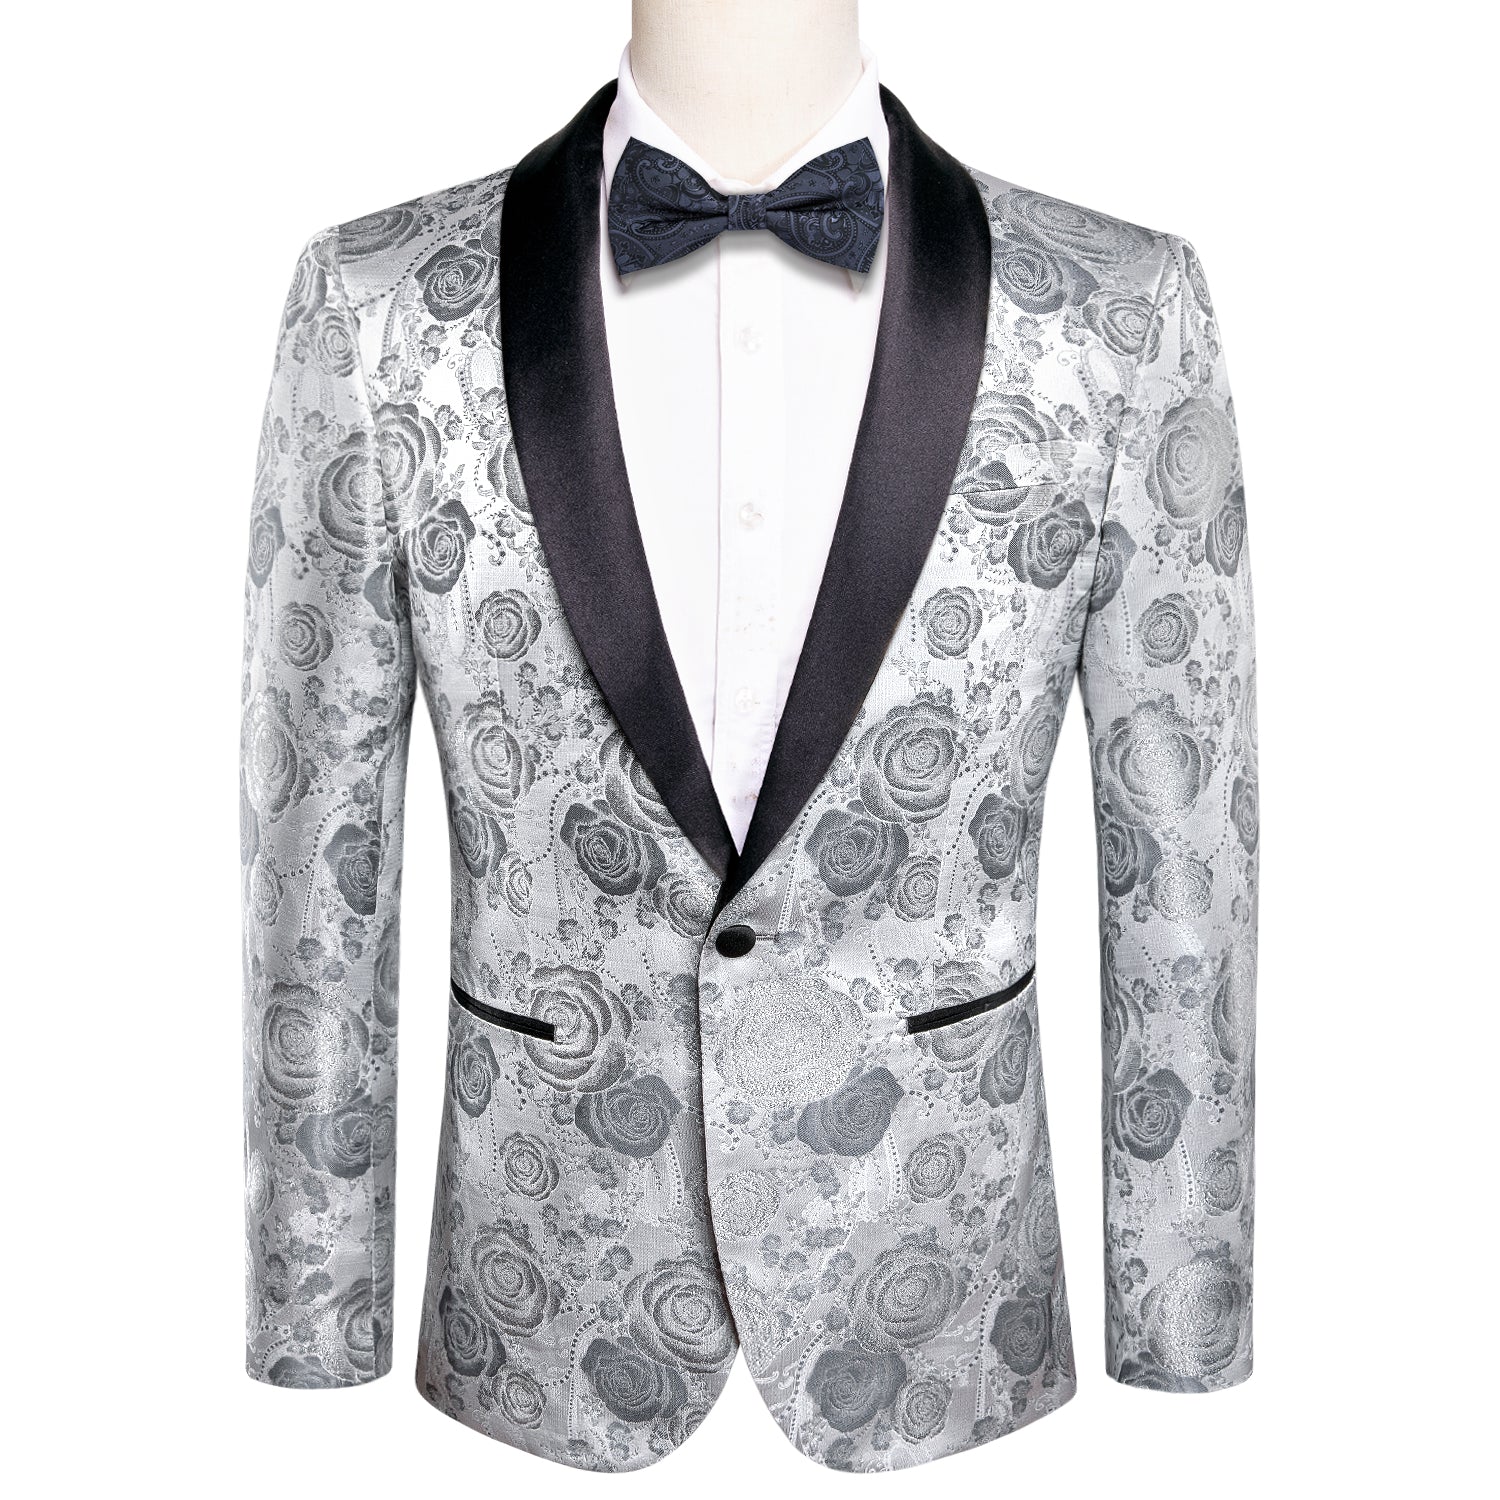 New Luxury Grey White Floral Men's Suit Set